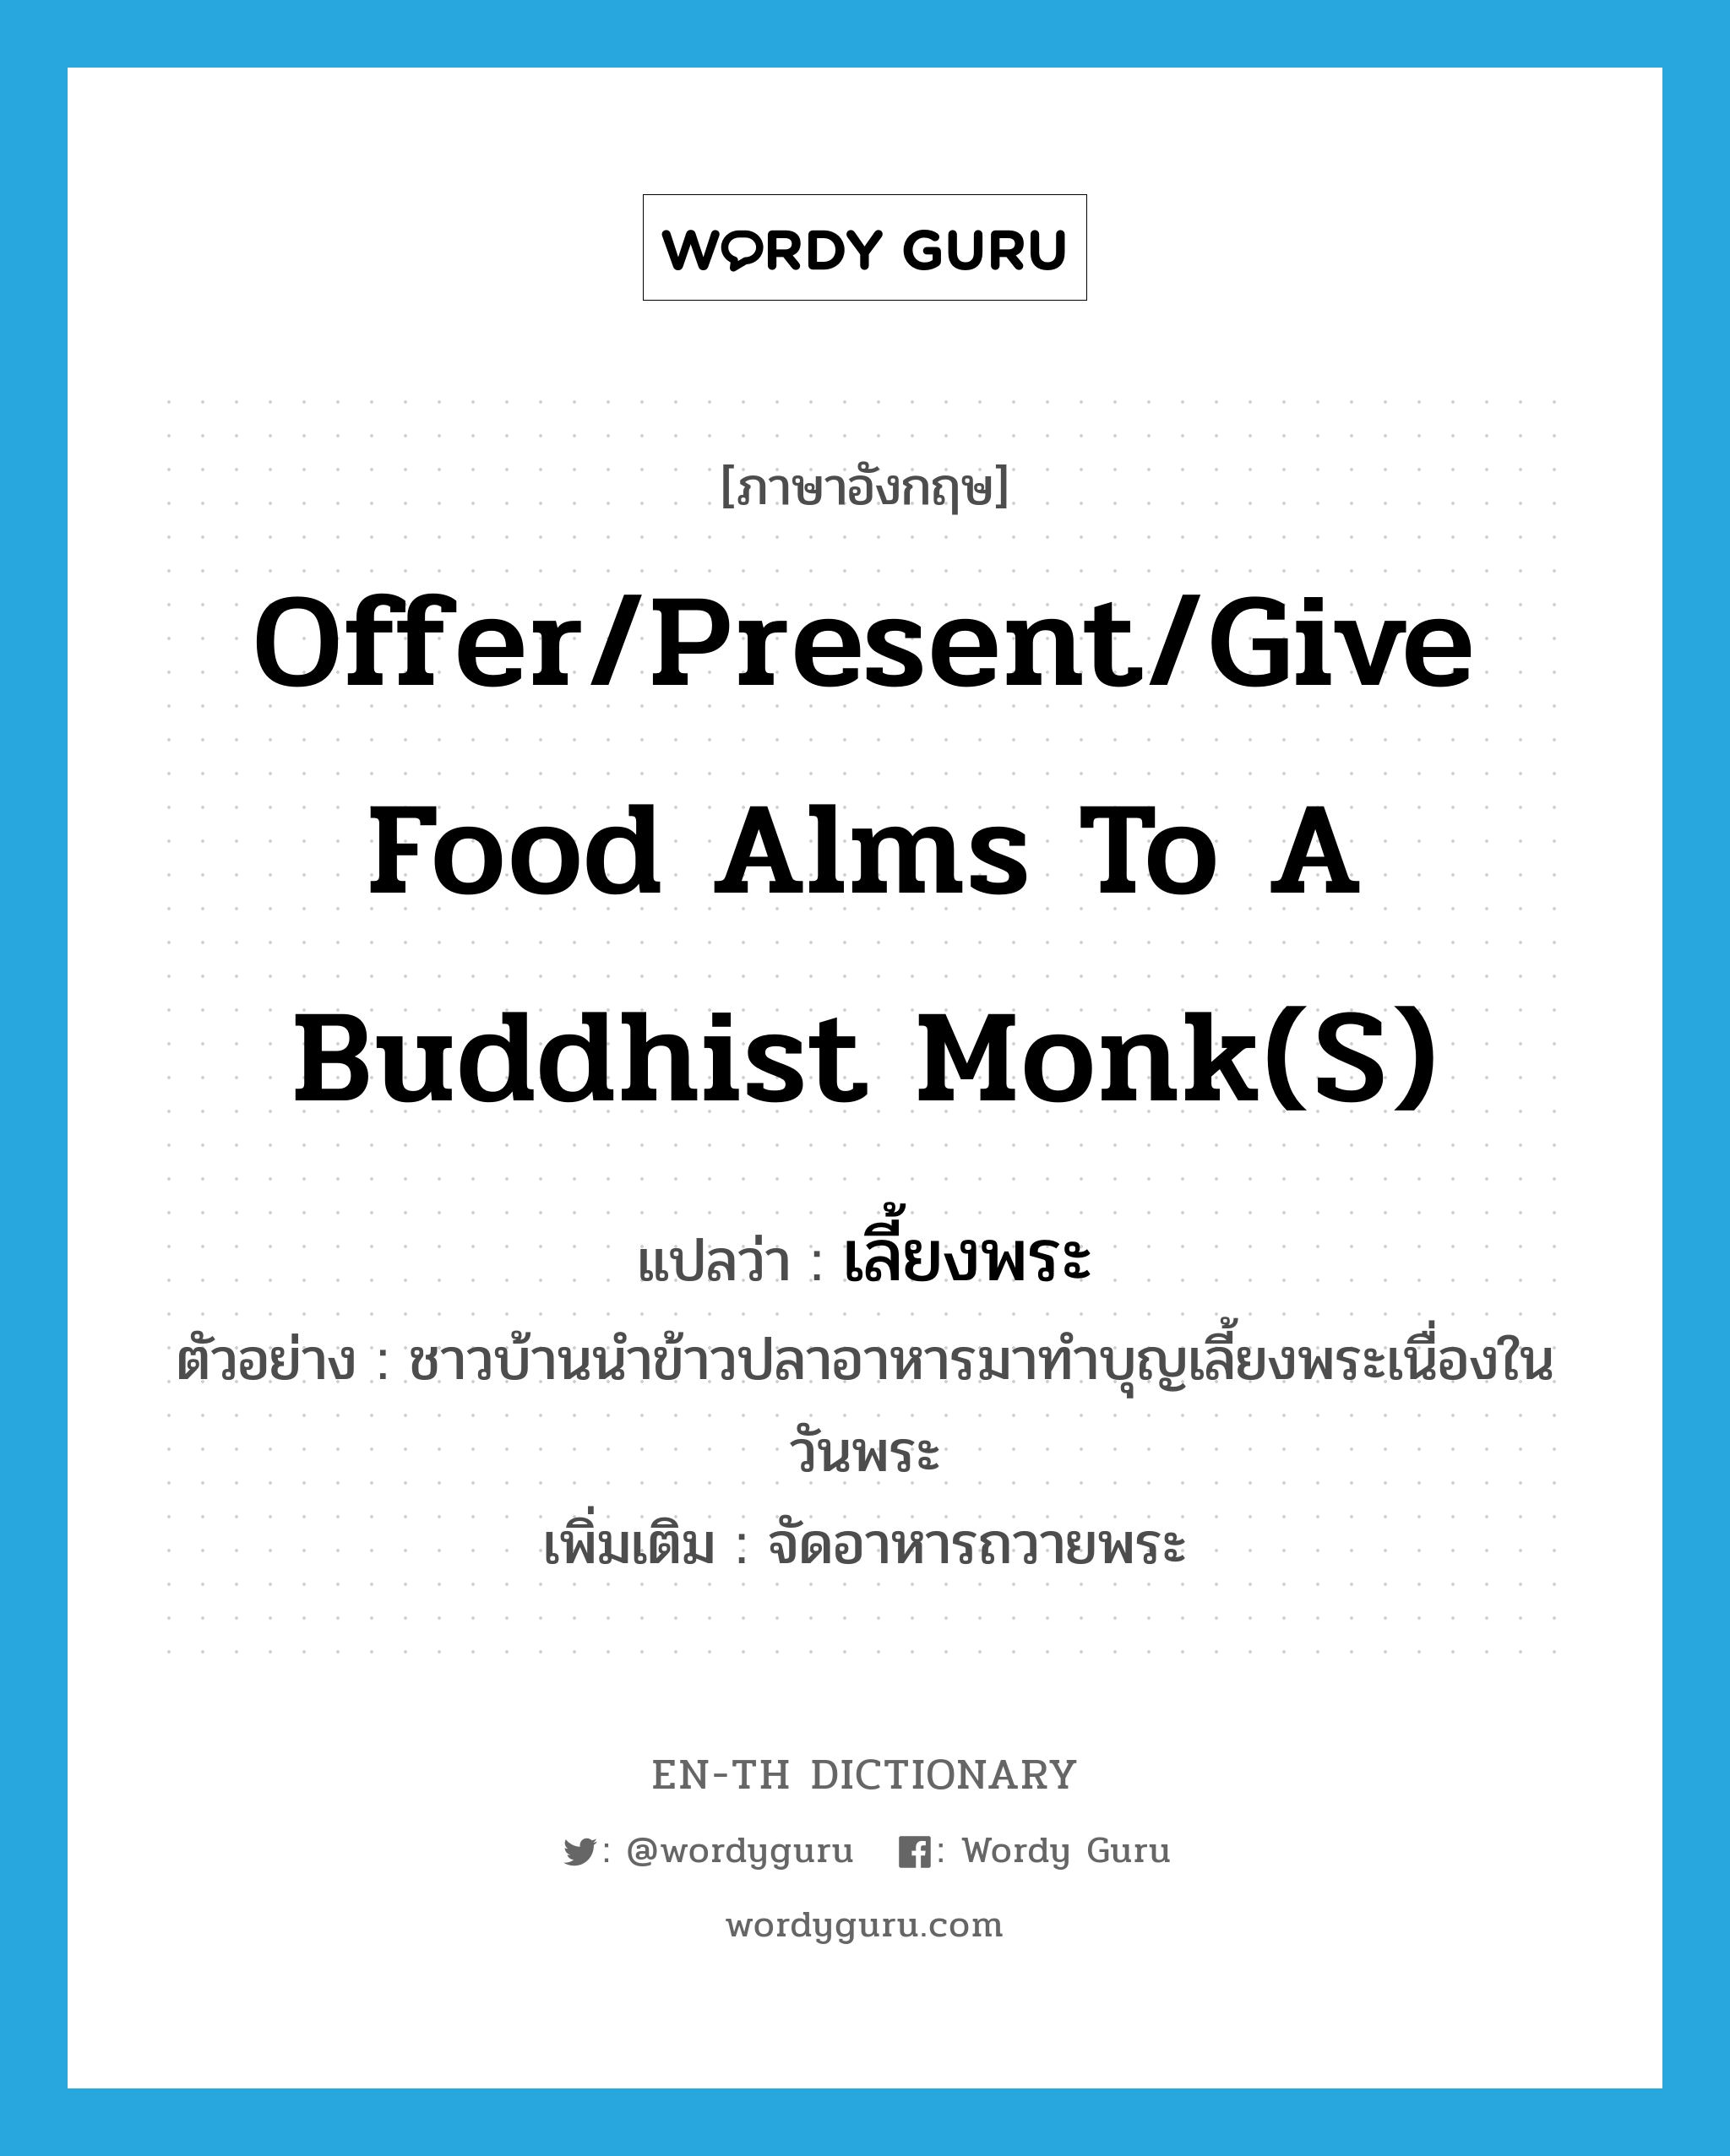 เลี้ยงพระ ภาษาอังกฤษ?, คำศัพท์ภาษาอังกฤษ เลี้ยงพระ แปลว่า offer/present/give food alms to a Buddhist monk(s) ประเภท V ตัวอย่าง ชาวบ้านนำข้าวปลาอาหารมาทำบุญเลี้ยงพระเนื่องในวันพระ เพิ่มเติม จัดอาหารถวายพระ หมวด V